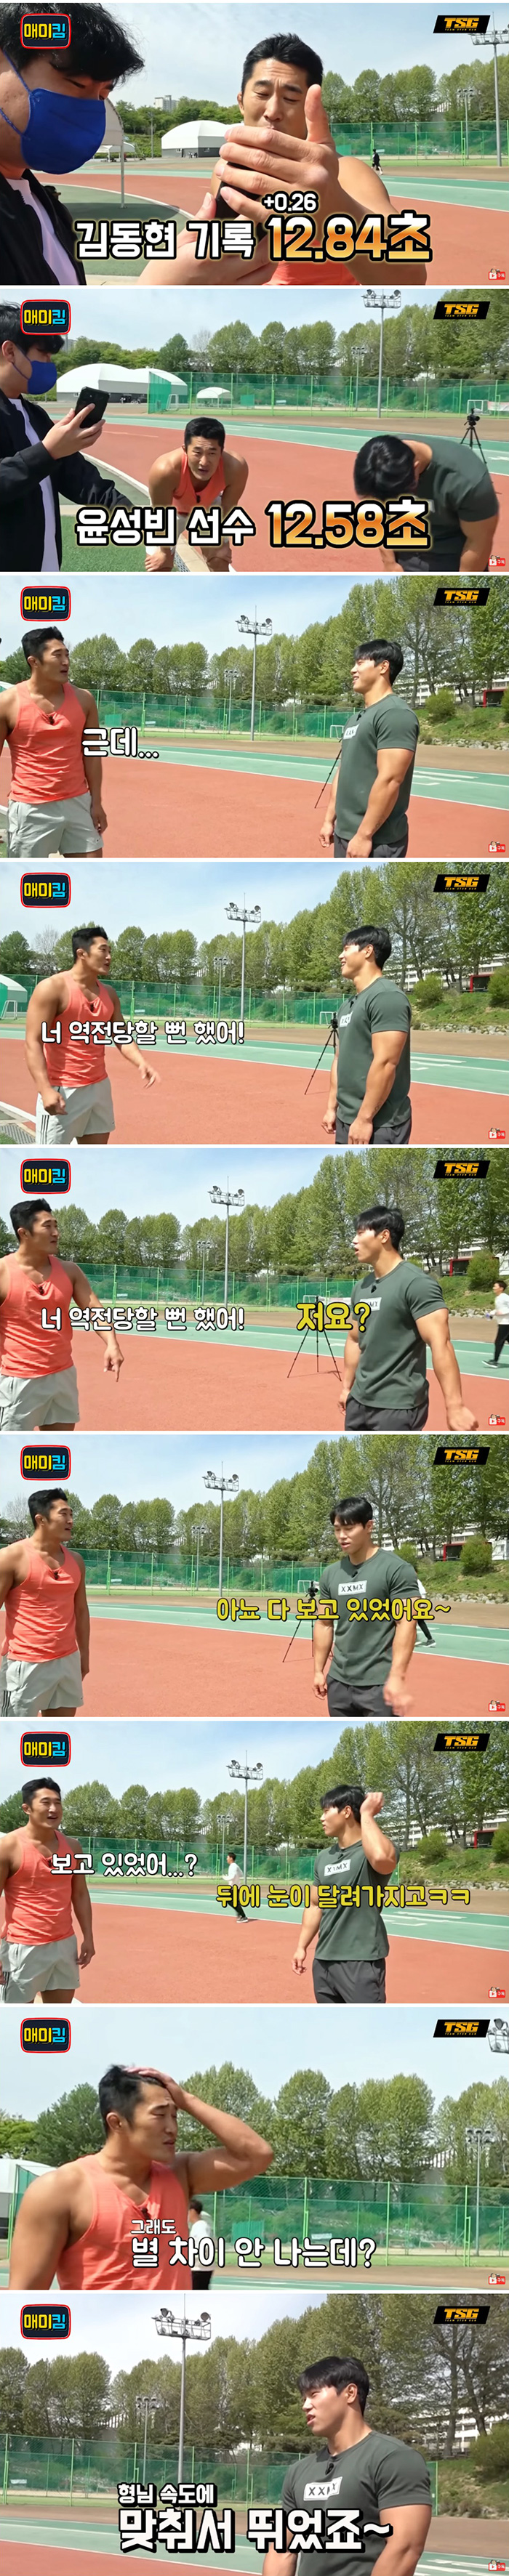 개그맨과 100m 달리기 대결하는 윤성빈